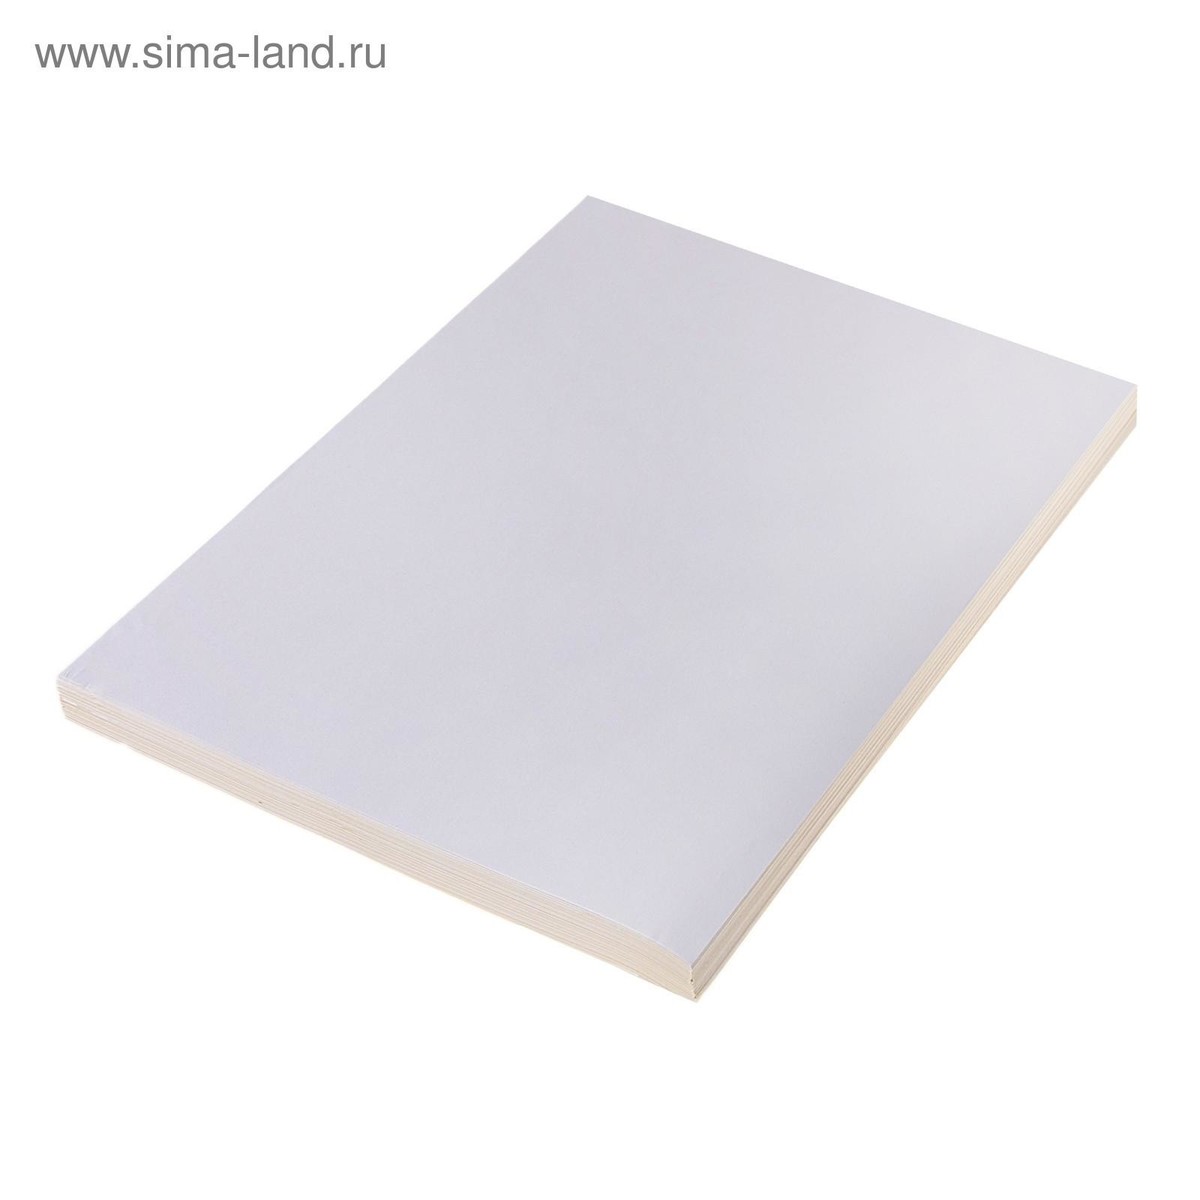 Бумага а4, 50 листов, 80 г/м, самоклеящаяся белая матовая краска ярославские краски faktor акриловая фасадная влагостойкая матовая белая 6 кг